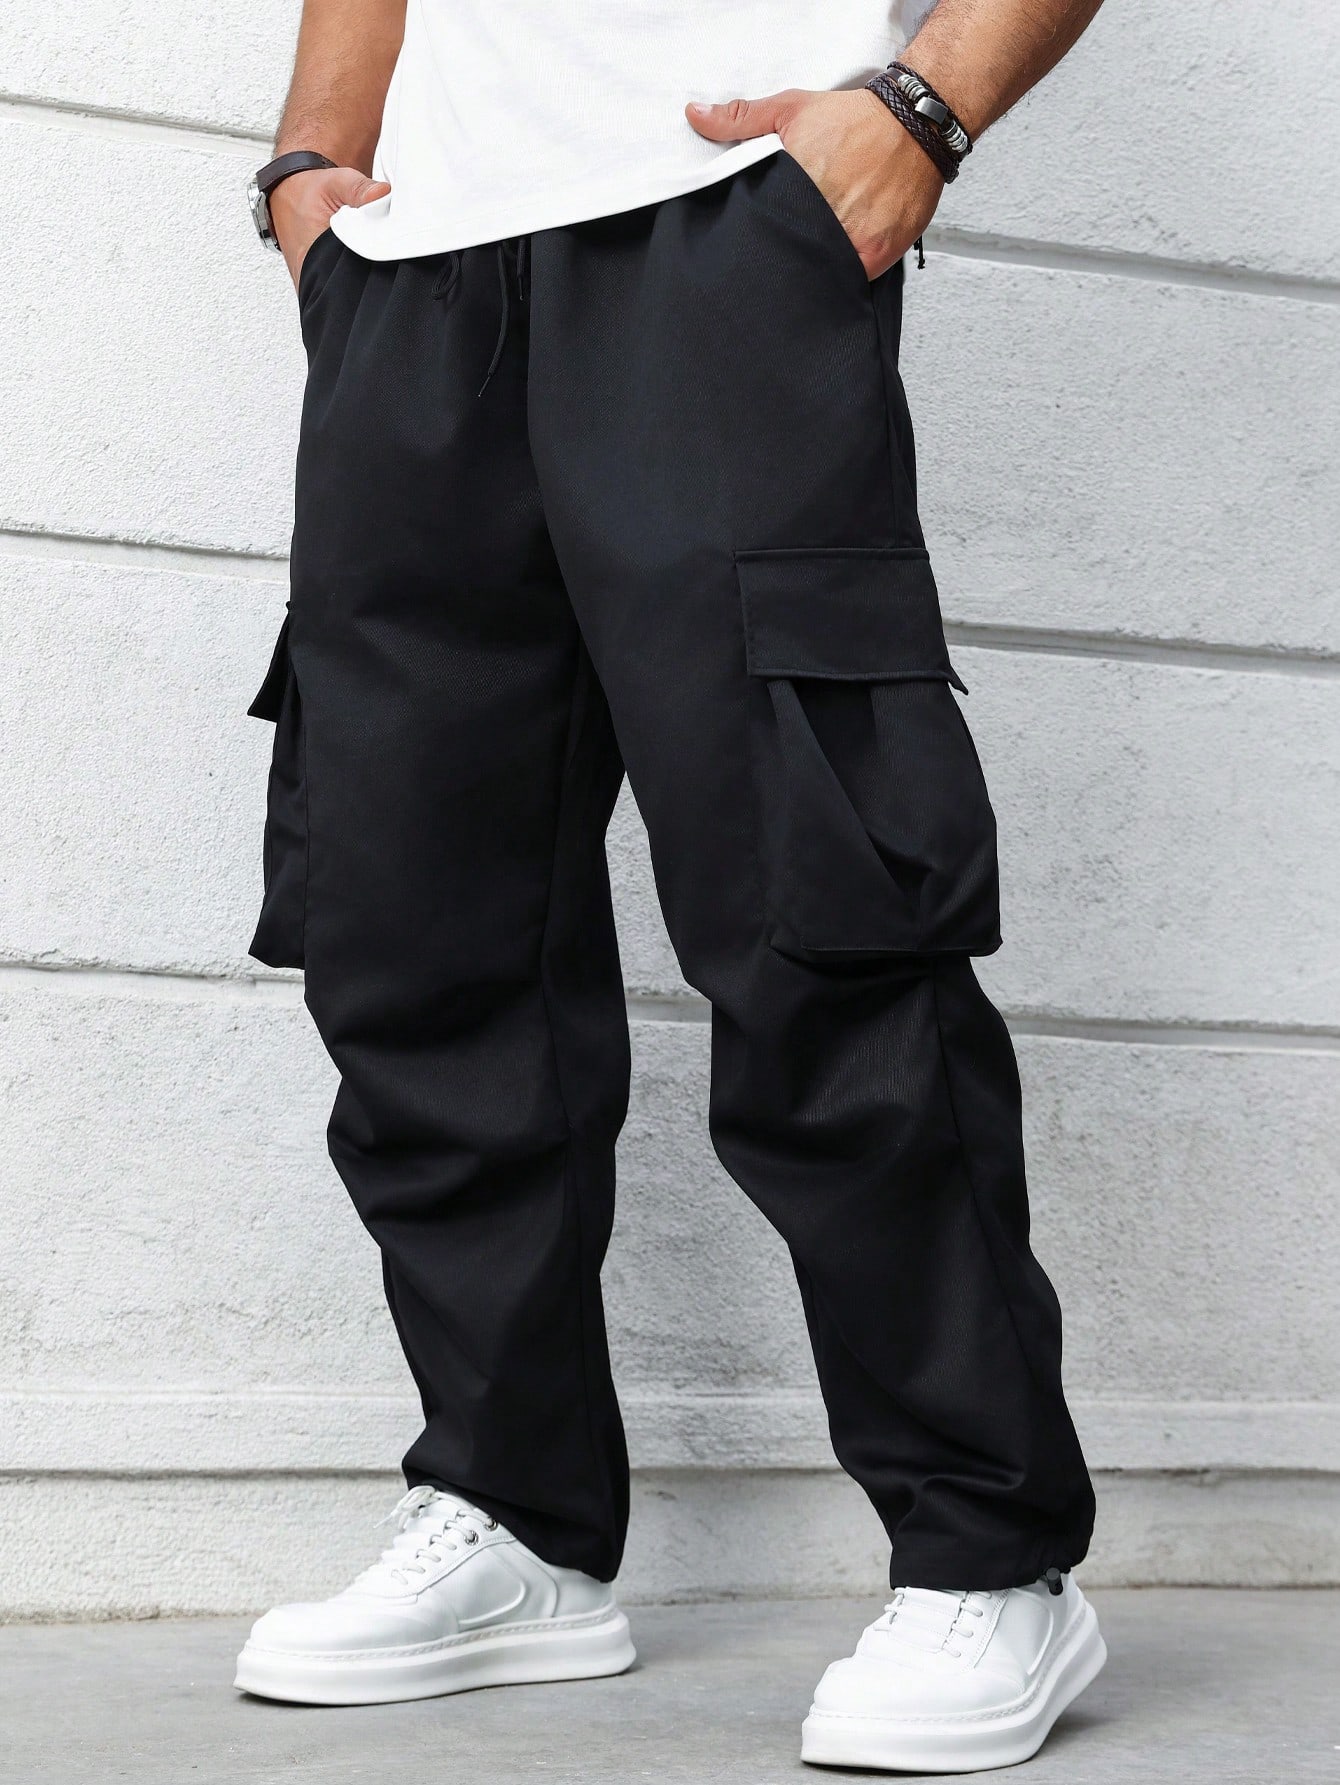 универсальные брюки карго больших и высоких размеров dockers Мужские брюки-карго больших размеров Manfinity Hypemode с карманами и карманами, черный